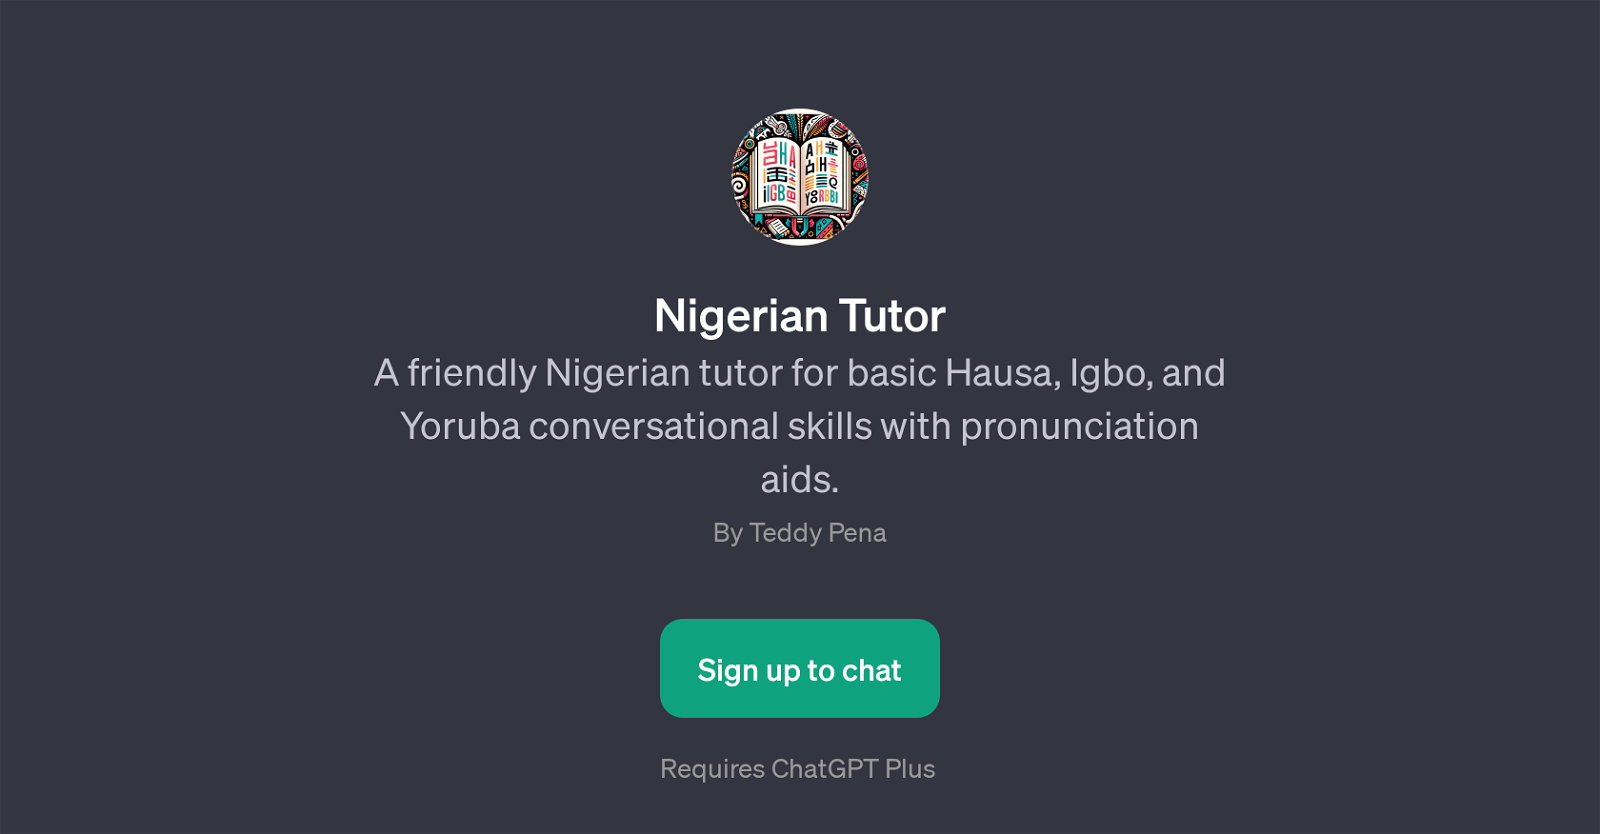 Nigerian Tutor website